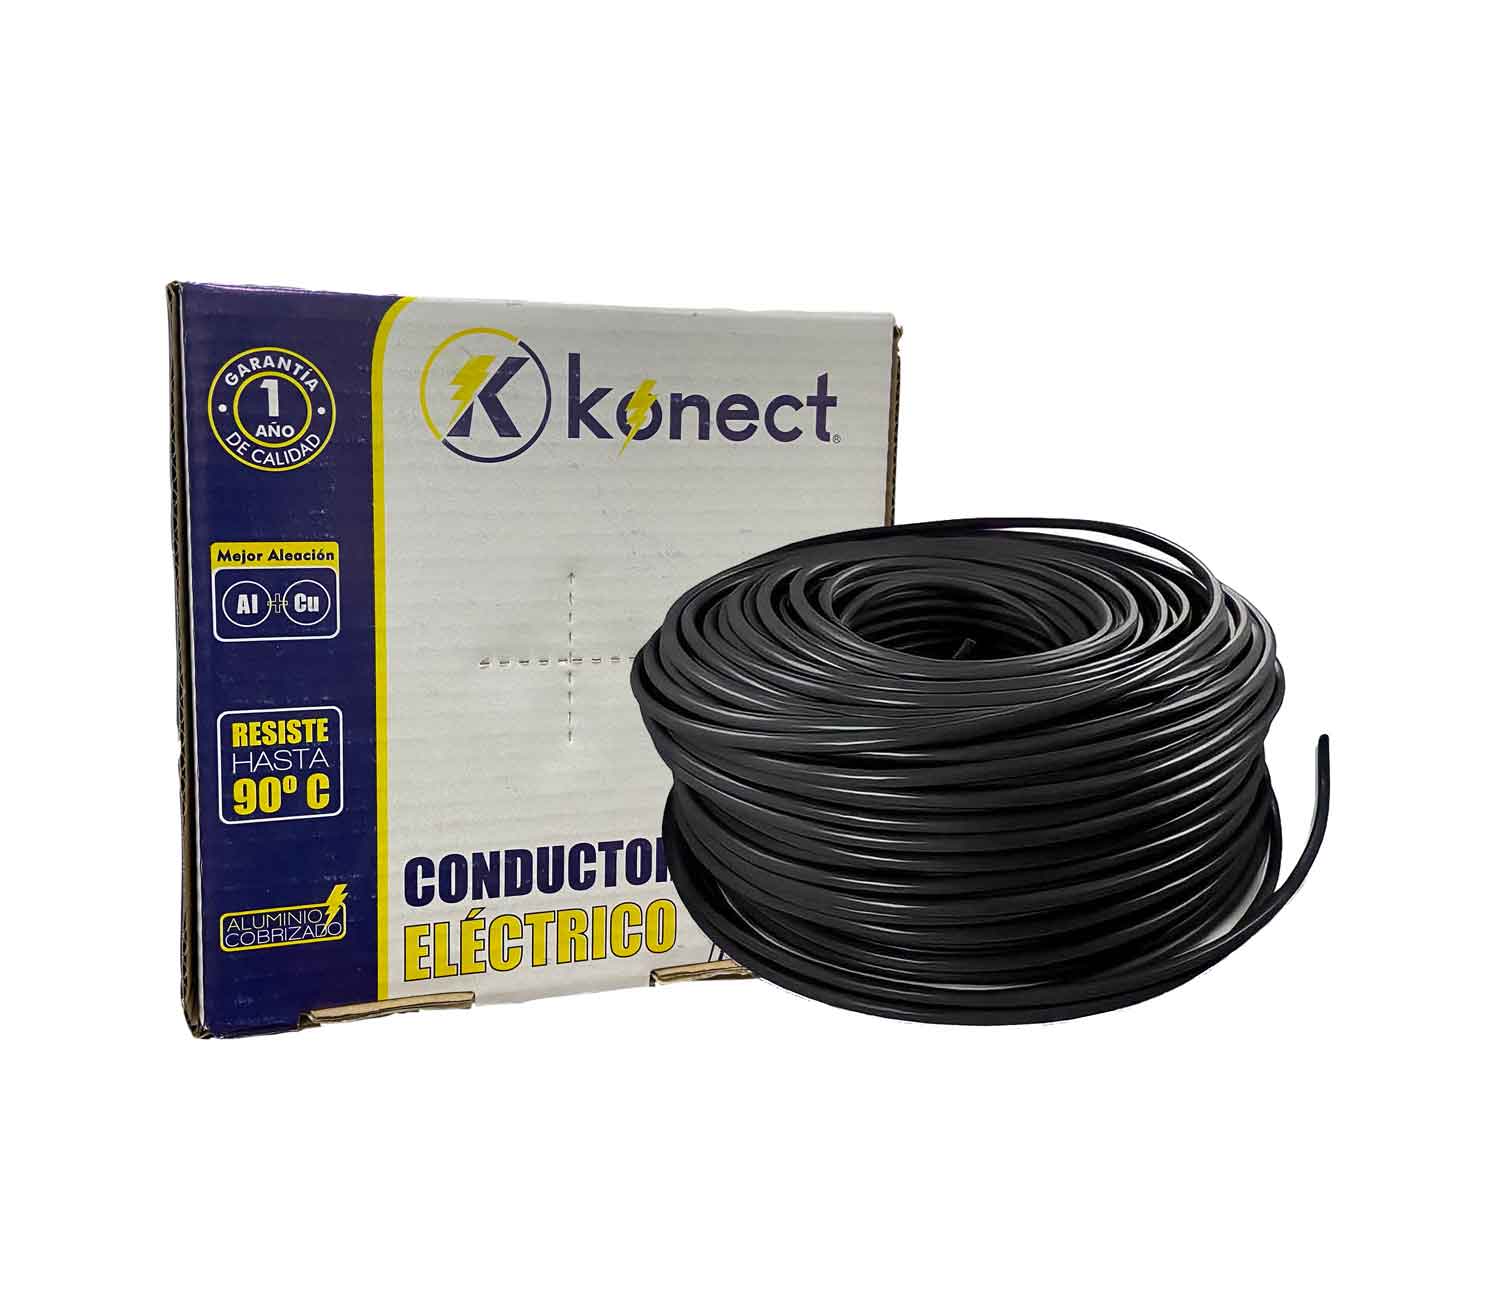 Hombre rico Accor Competencia Cable Electrico Cca Calibre 8 Negro Rollo 100m Konect – Ferreabasto